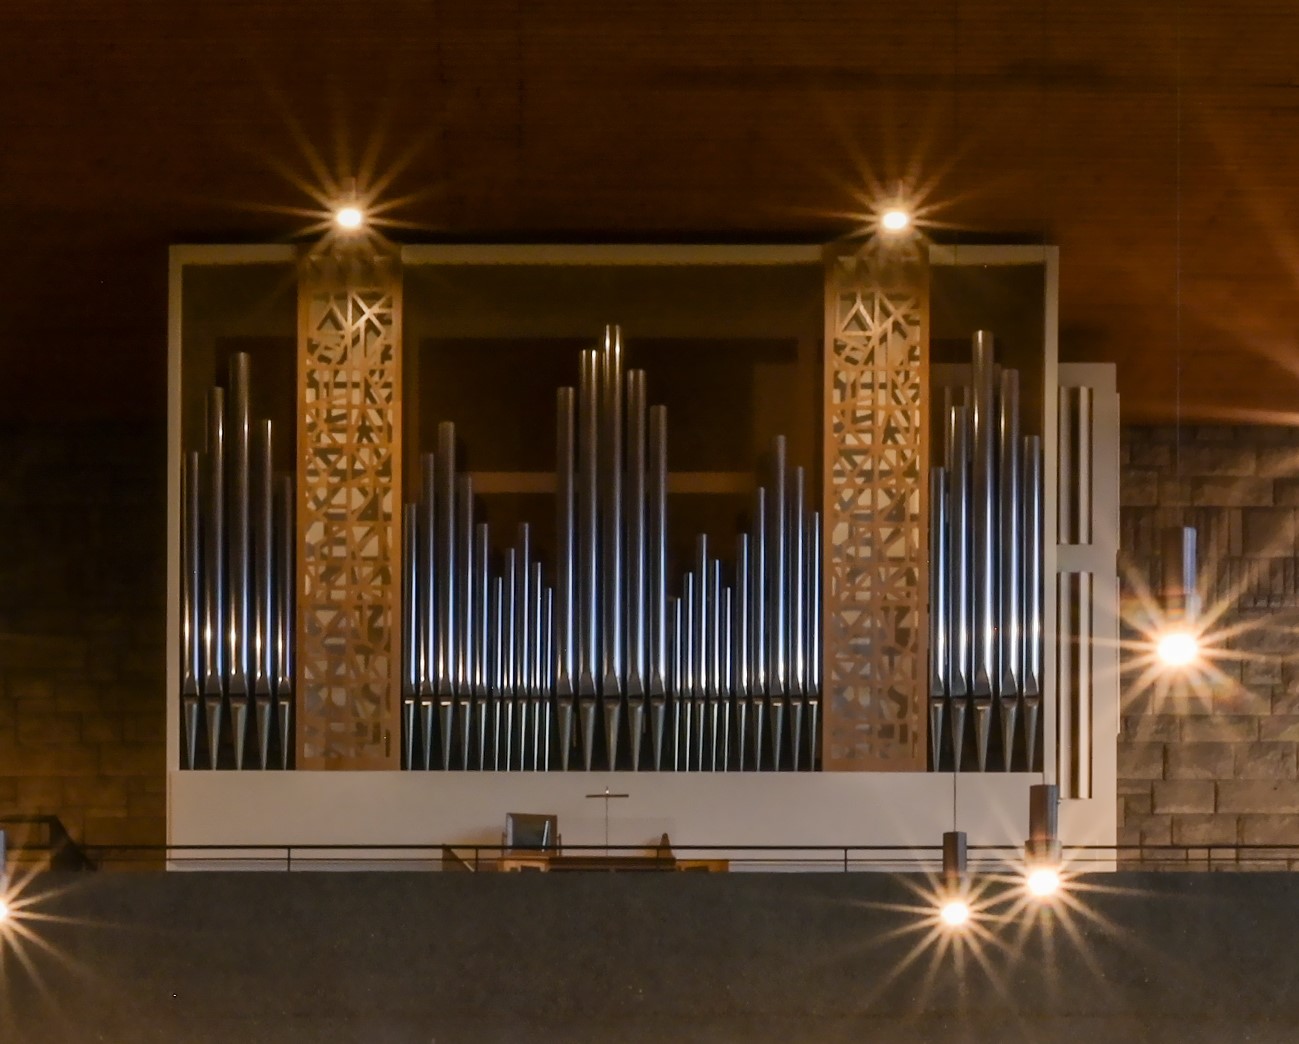 Orgel in einem weißen, rechteckigen Gehäuse, vorne offen mit gitterartigem Schauprospekt an 2 Stellen